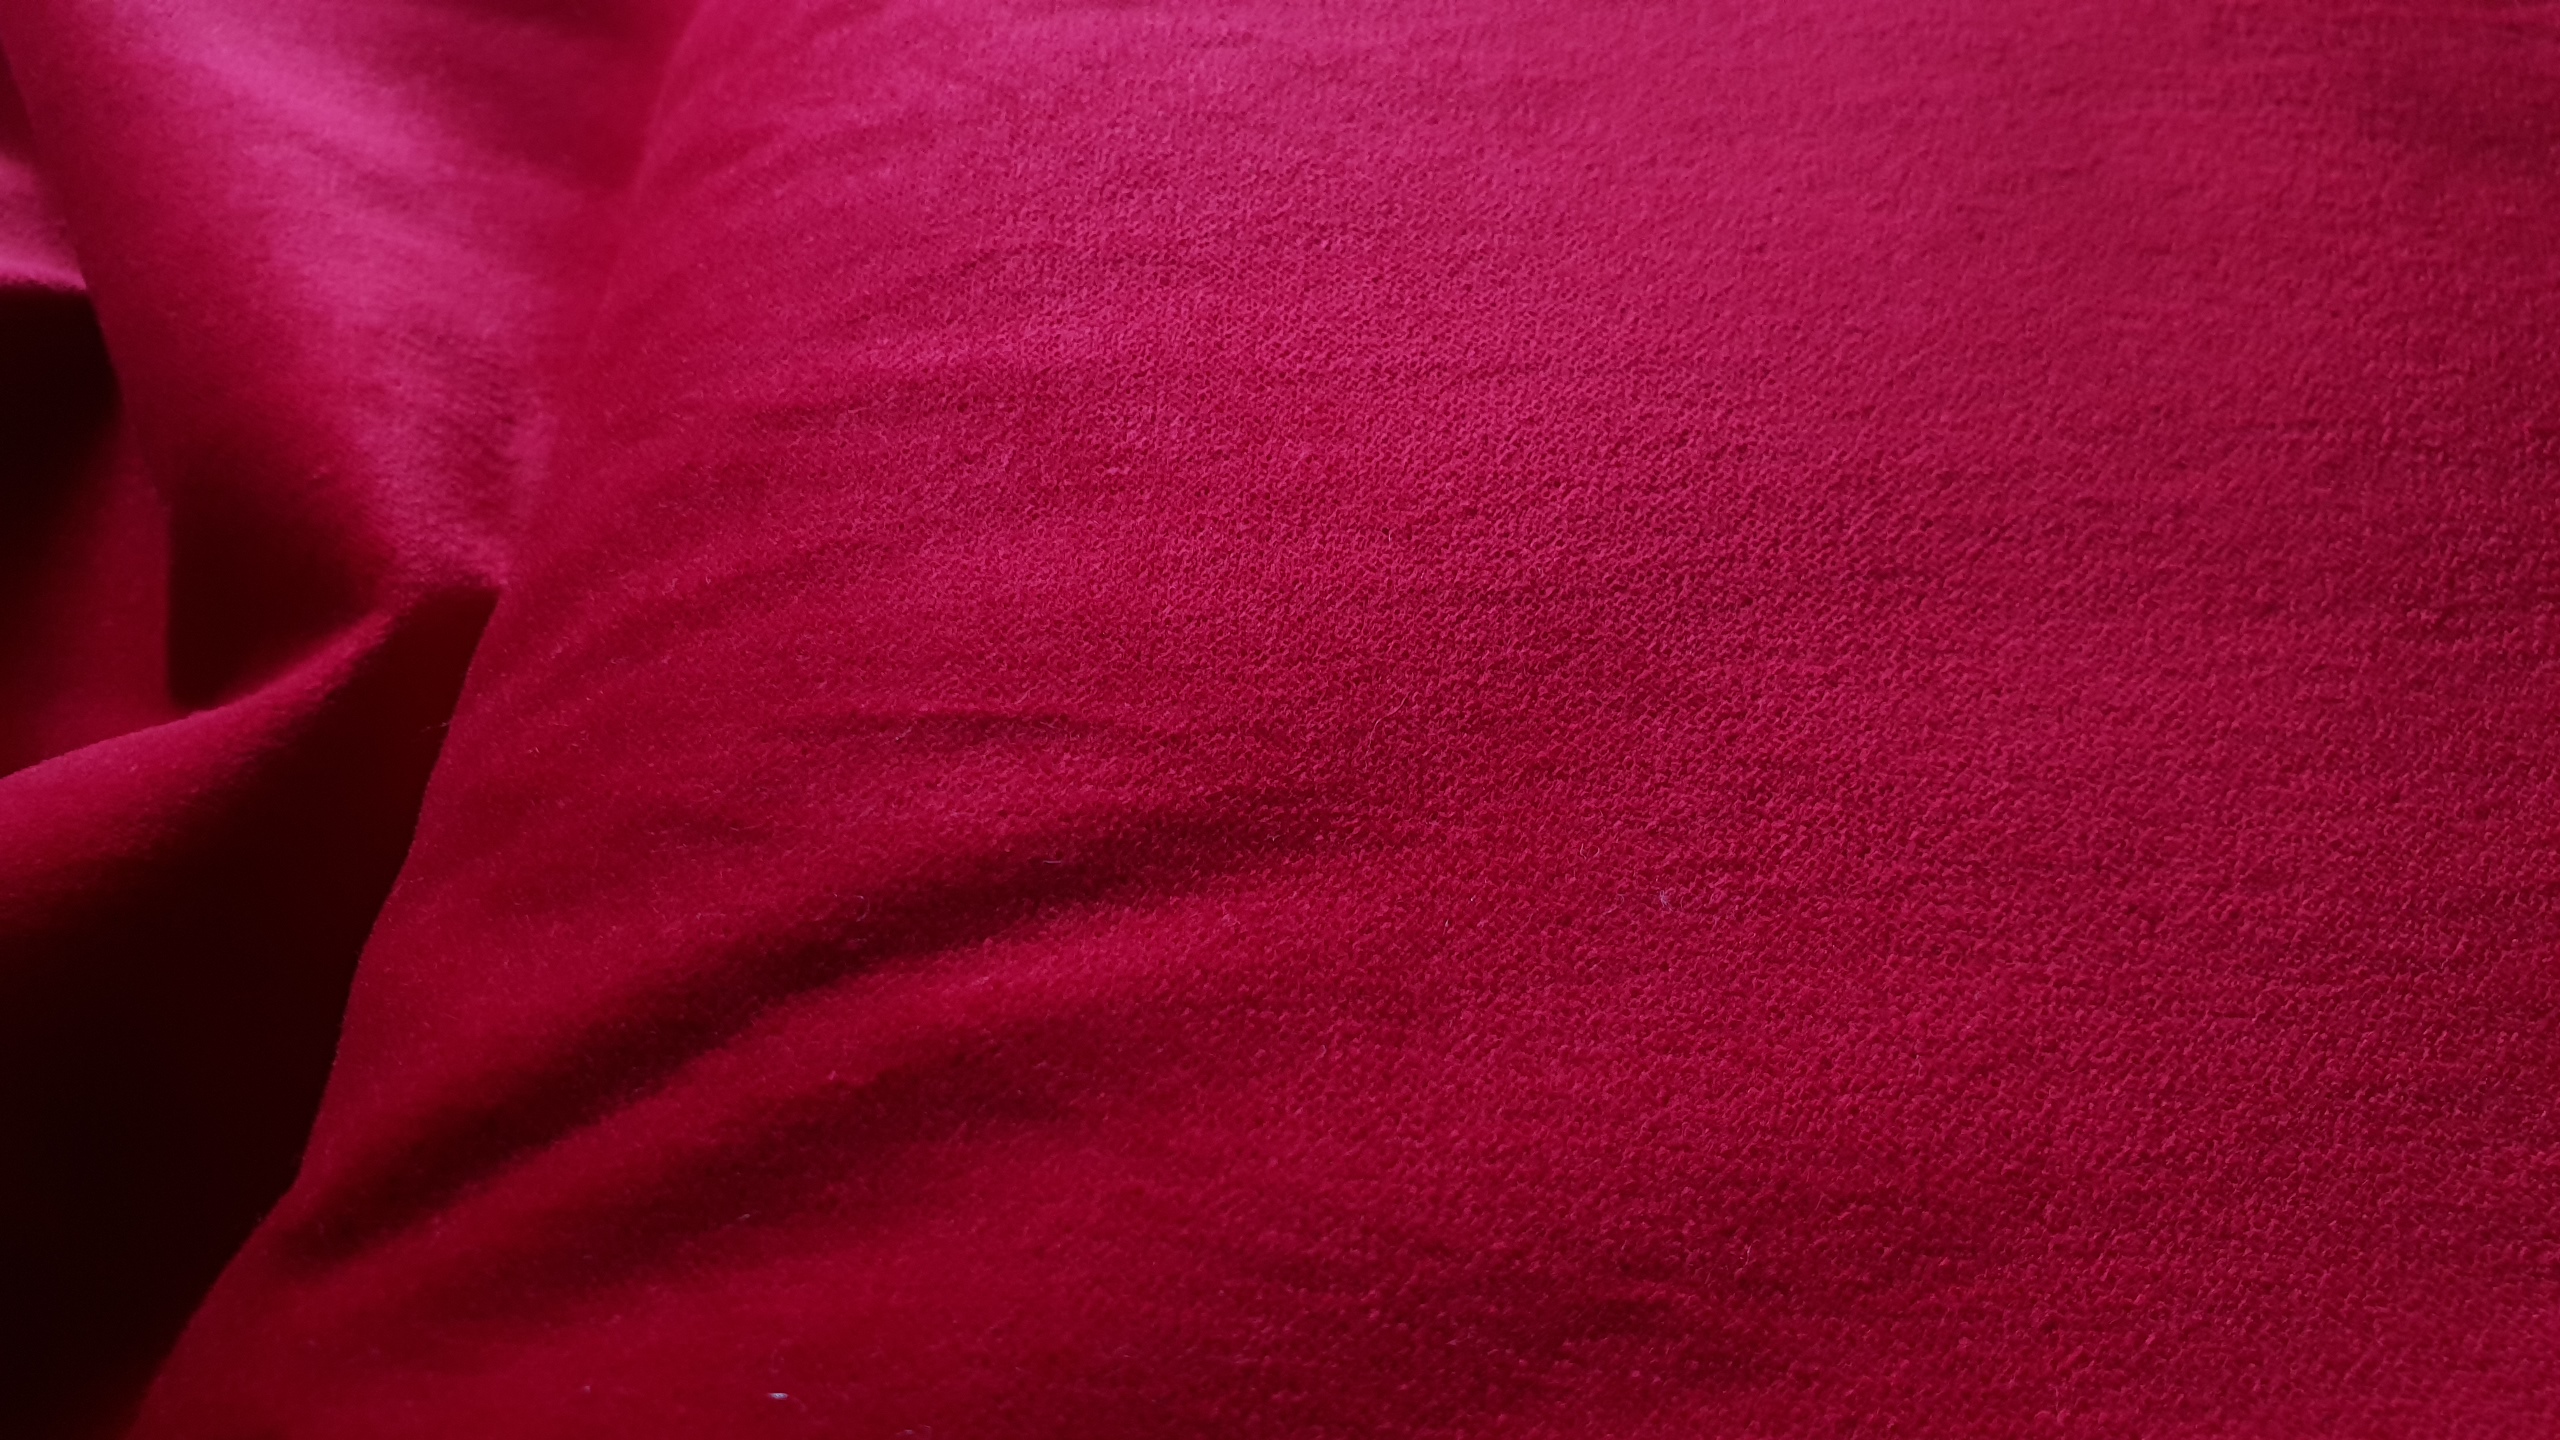 Cotton velvet- Deep red